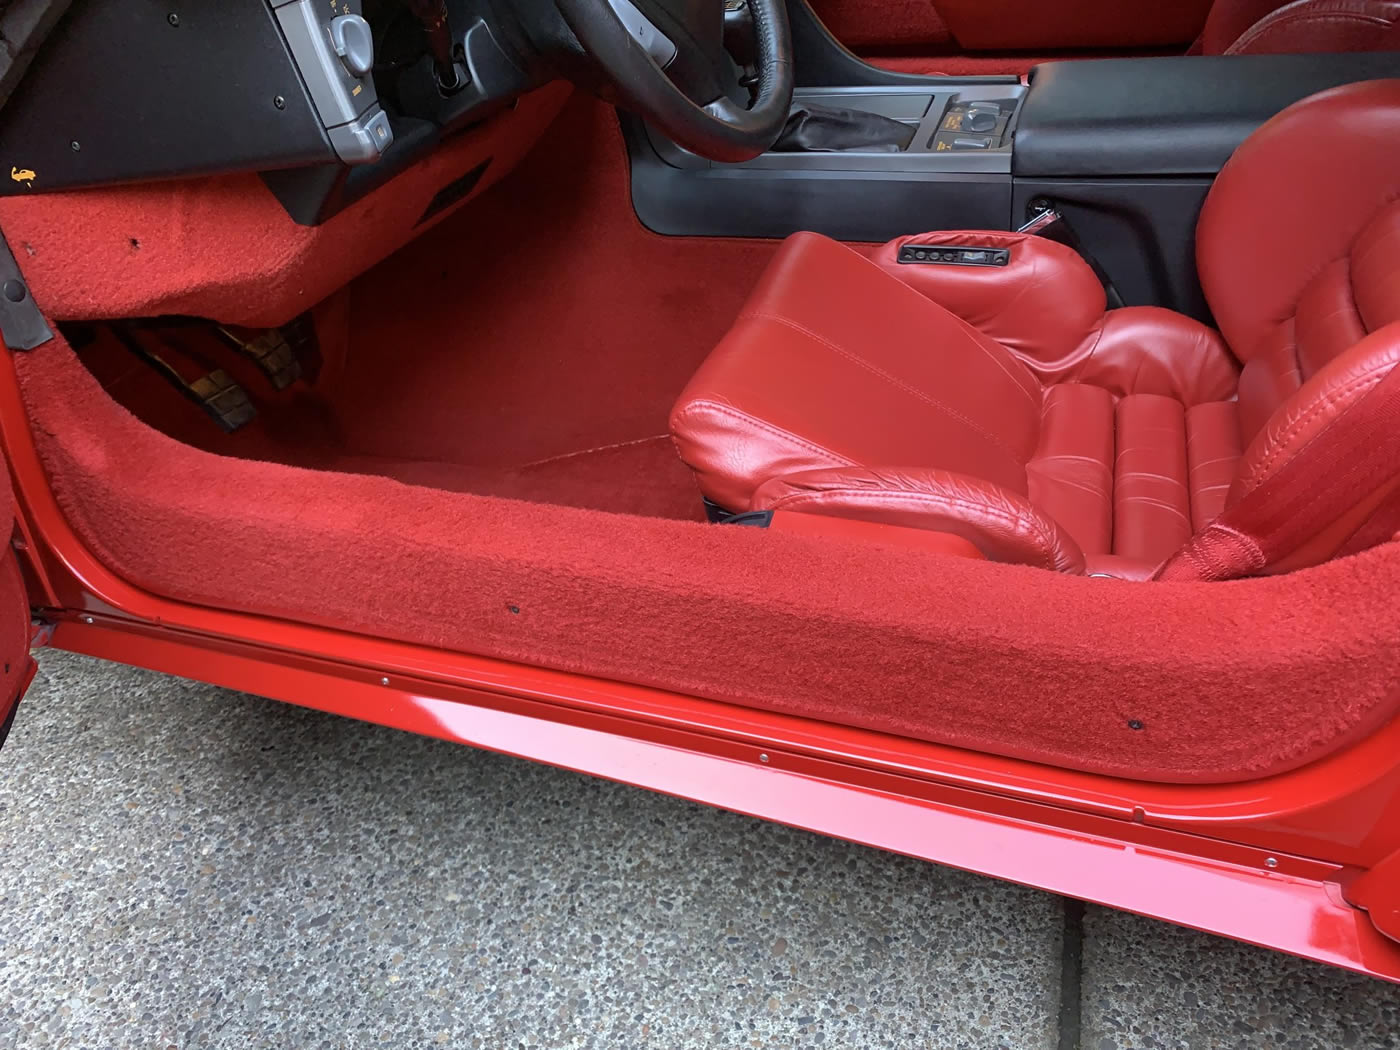 1991 Corvette ZR-1 in Bright Red